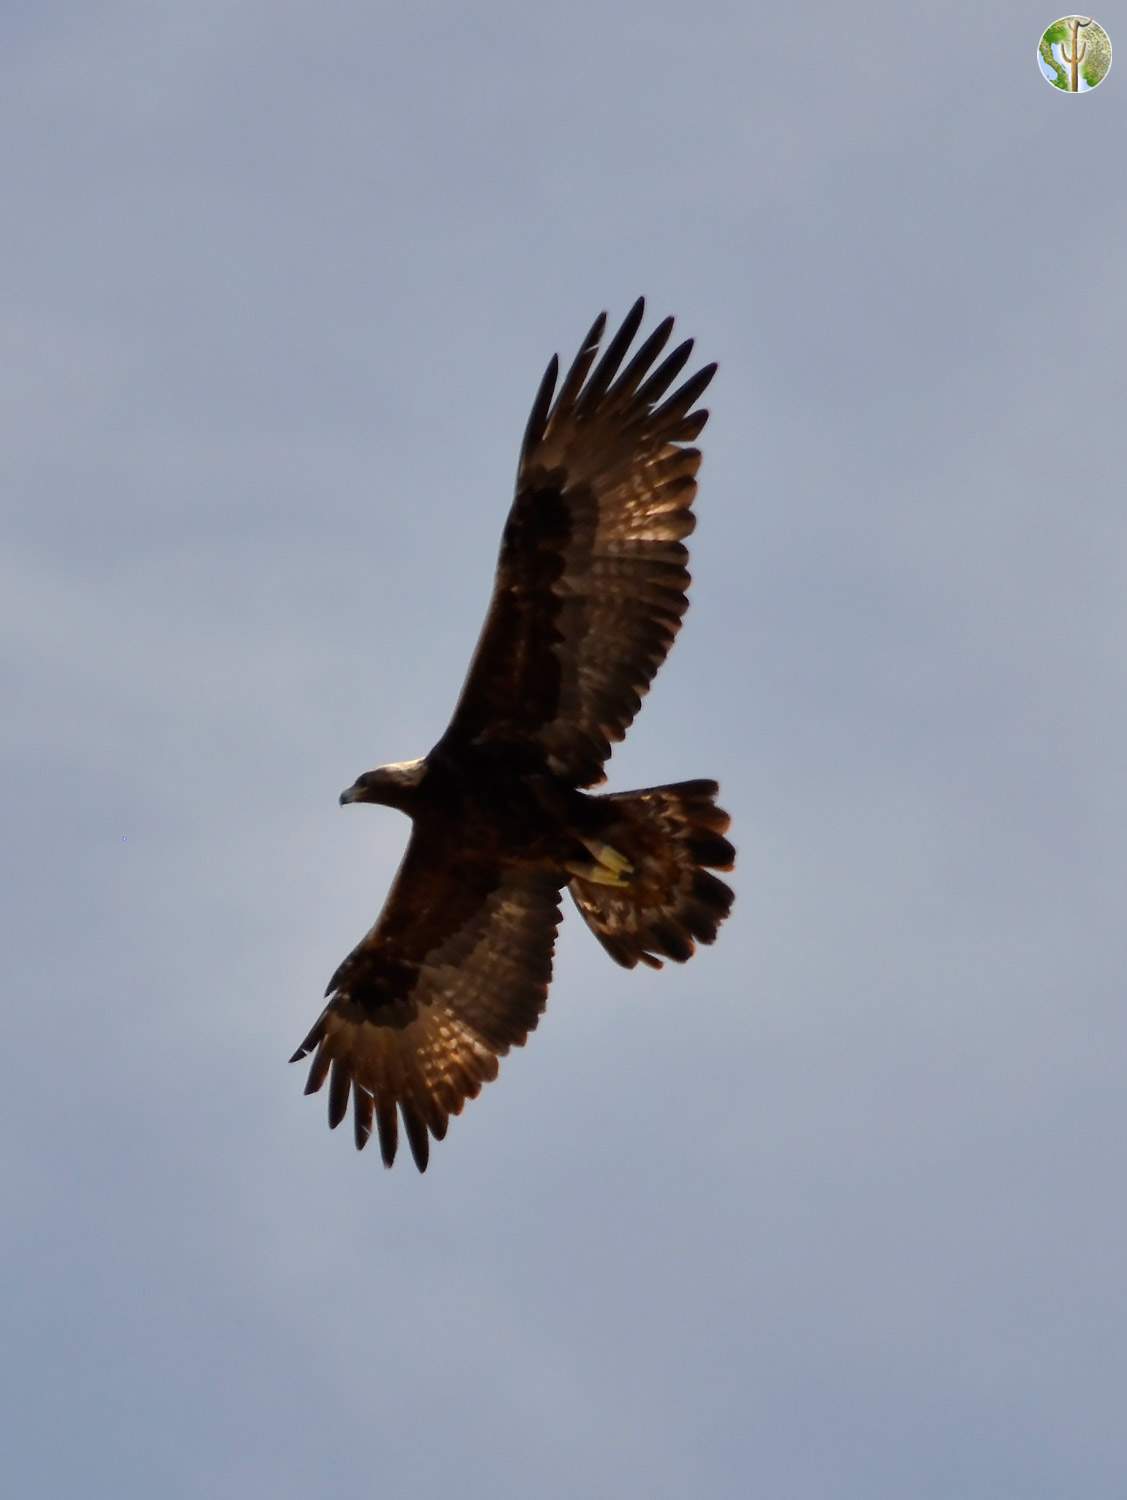 Golden Eagle soaring